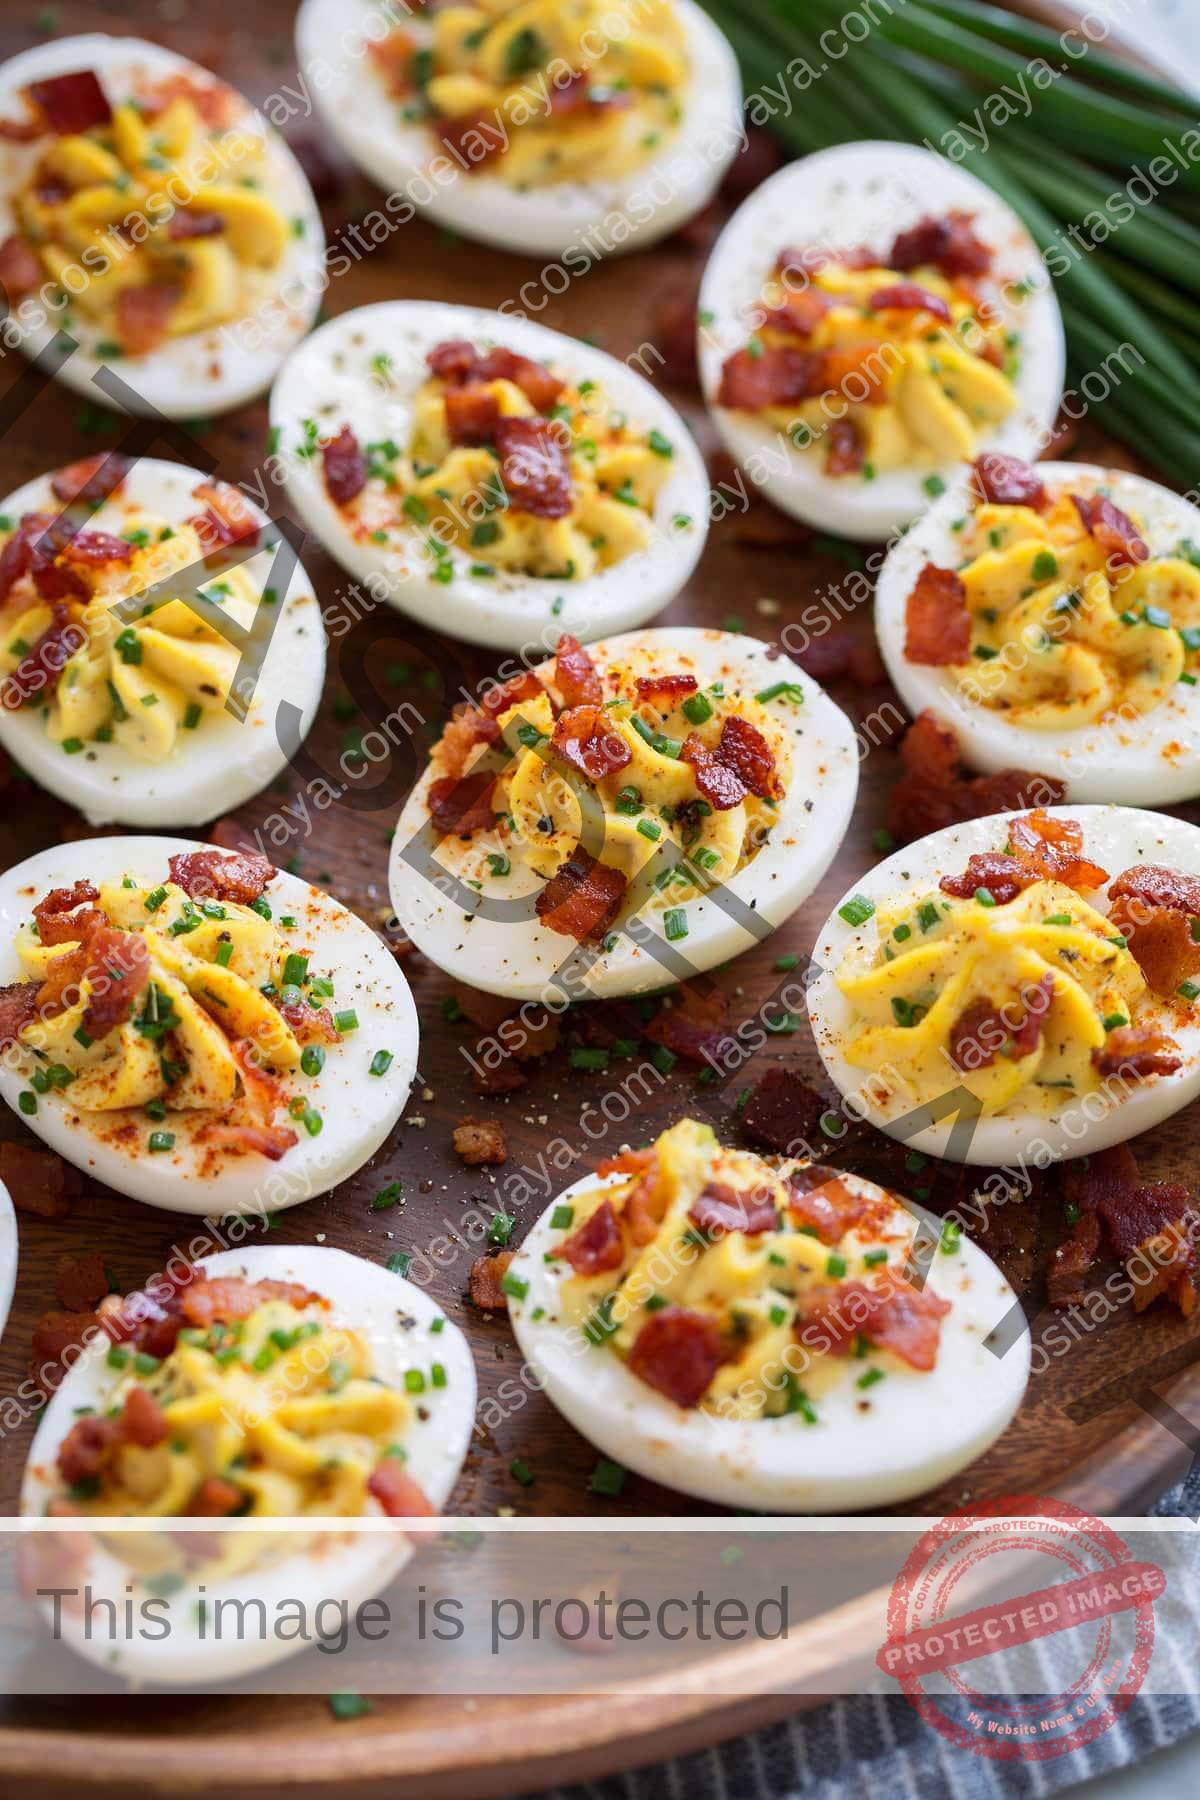 Plato de madera lleno de huevos duros. Huevos rellenos de mayonesa cremosa y relleno de yema de huevo, acompañados de cebollino y tocino.